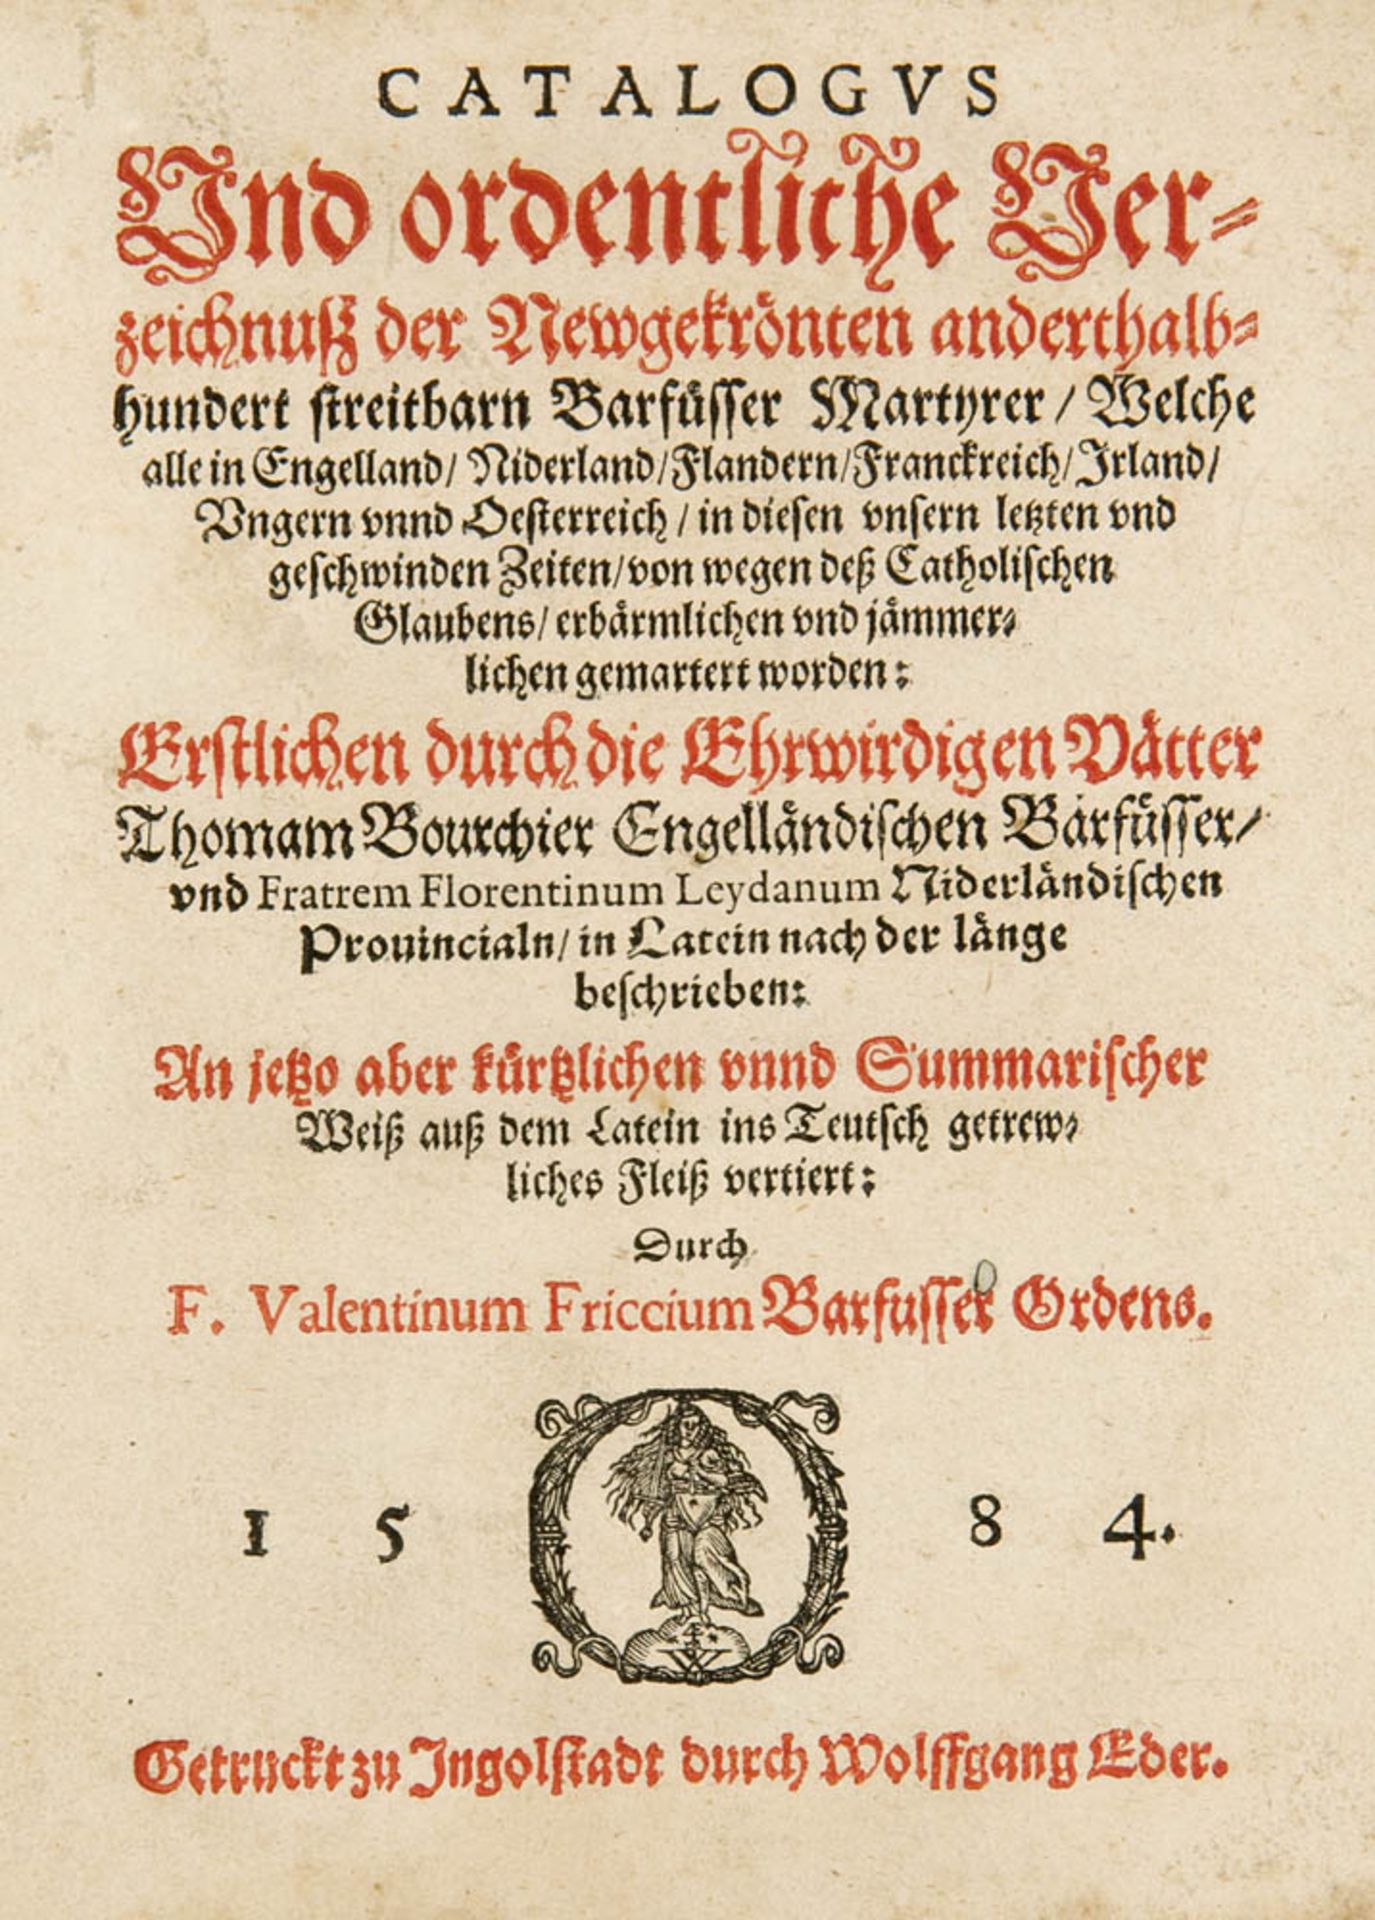 Barfüßer - - Bourchier, Thomas und Florentinus Leydanus. Catalogus Und ordentliche Verzeichnuß der